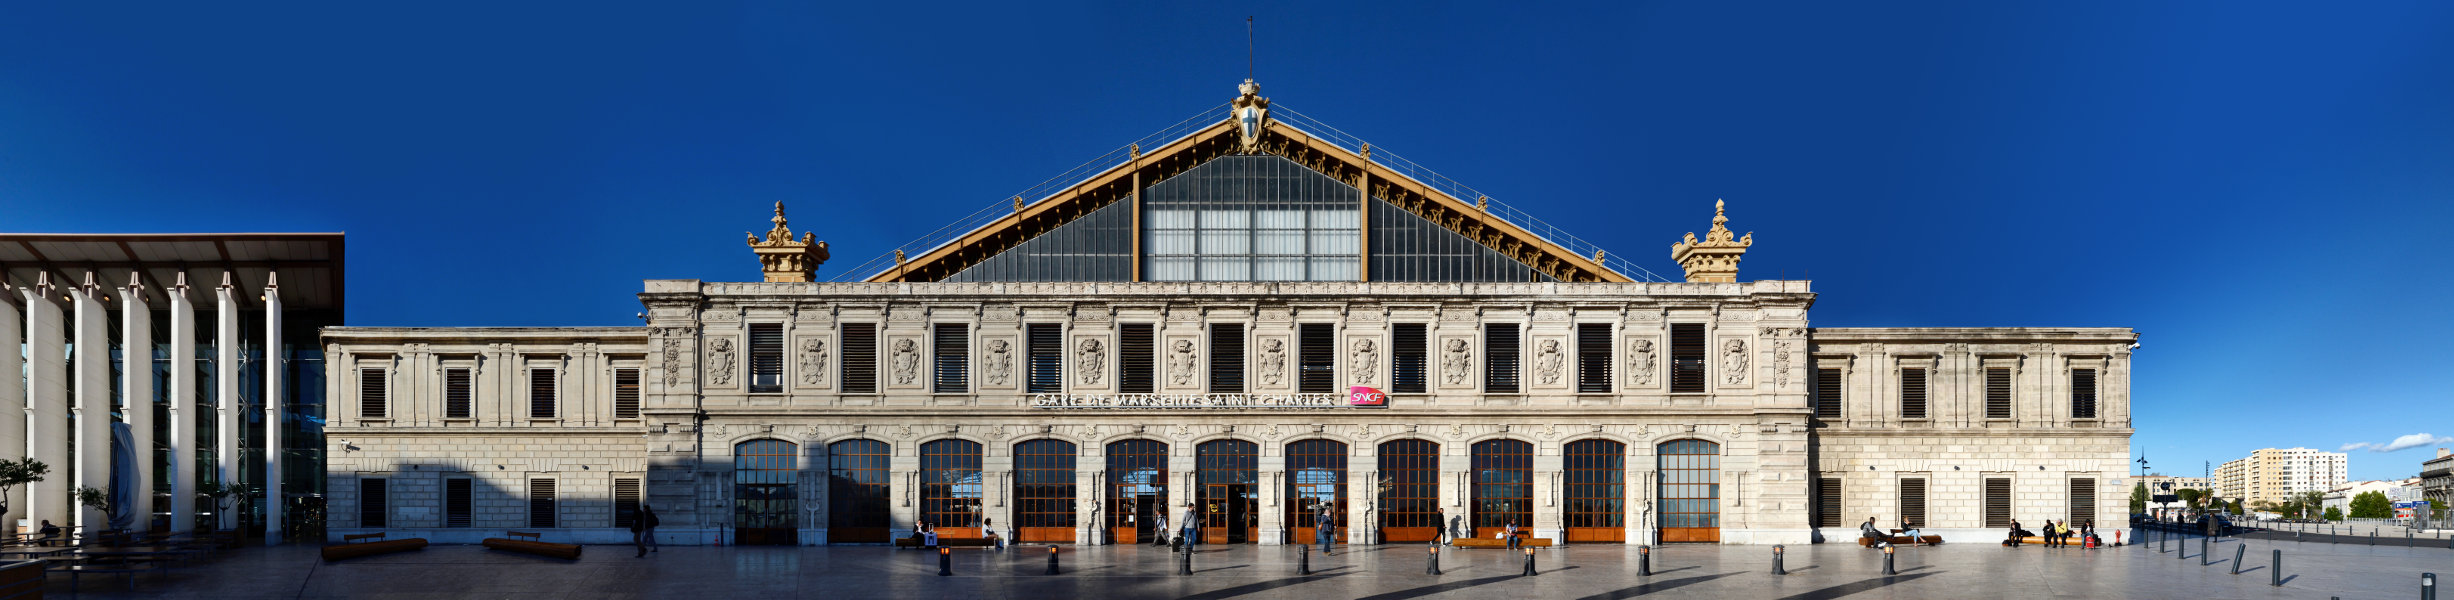 Bahnhof Marseille Train Station Gare